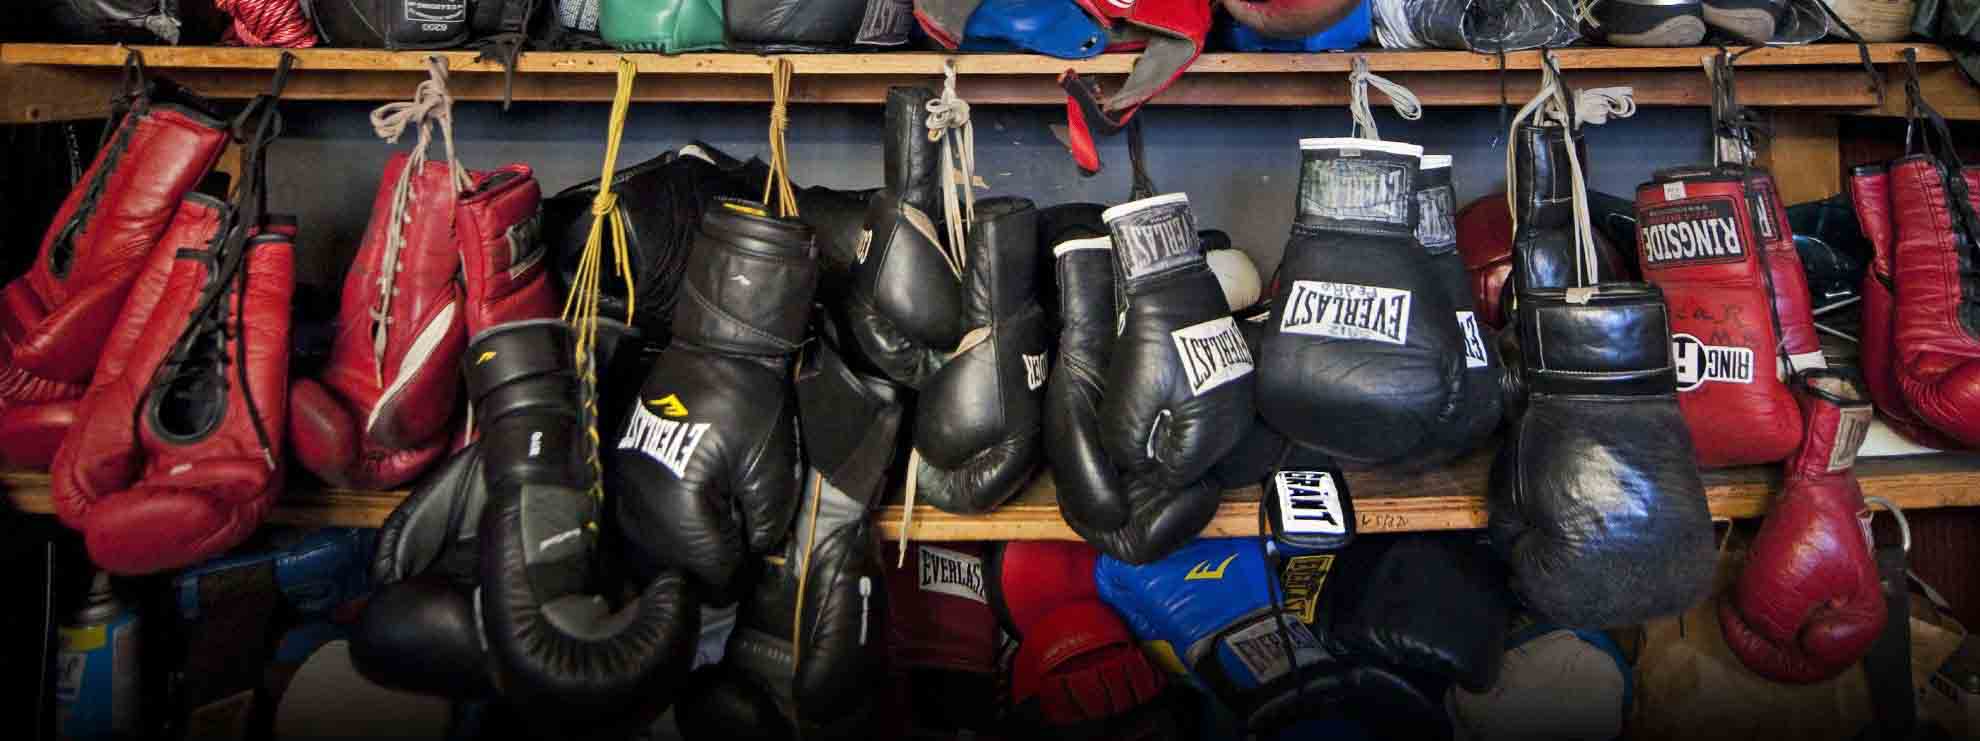 Ένωση Πυγμάχων Ιωαννίνων, Πυγμαχία, Υγεία και ασφάλεια, Προστασία και υγιεινή, Boxers union of Ioannina, Boxers Union Ioannina, Boxing, Health and safety, Protection and Hygiene in Boxing